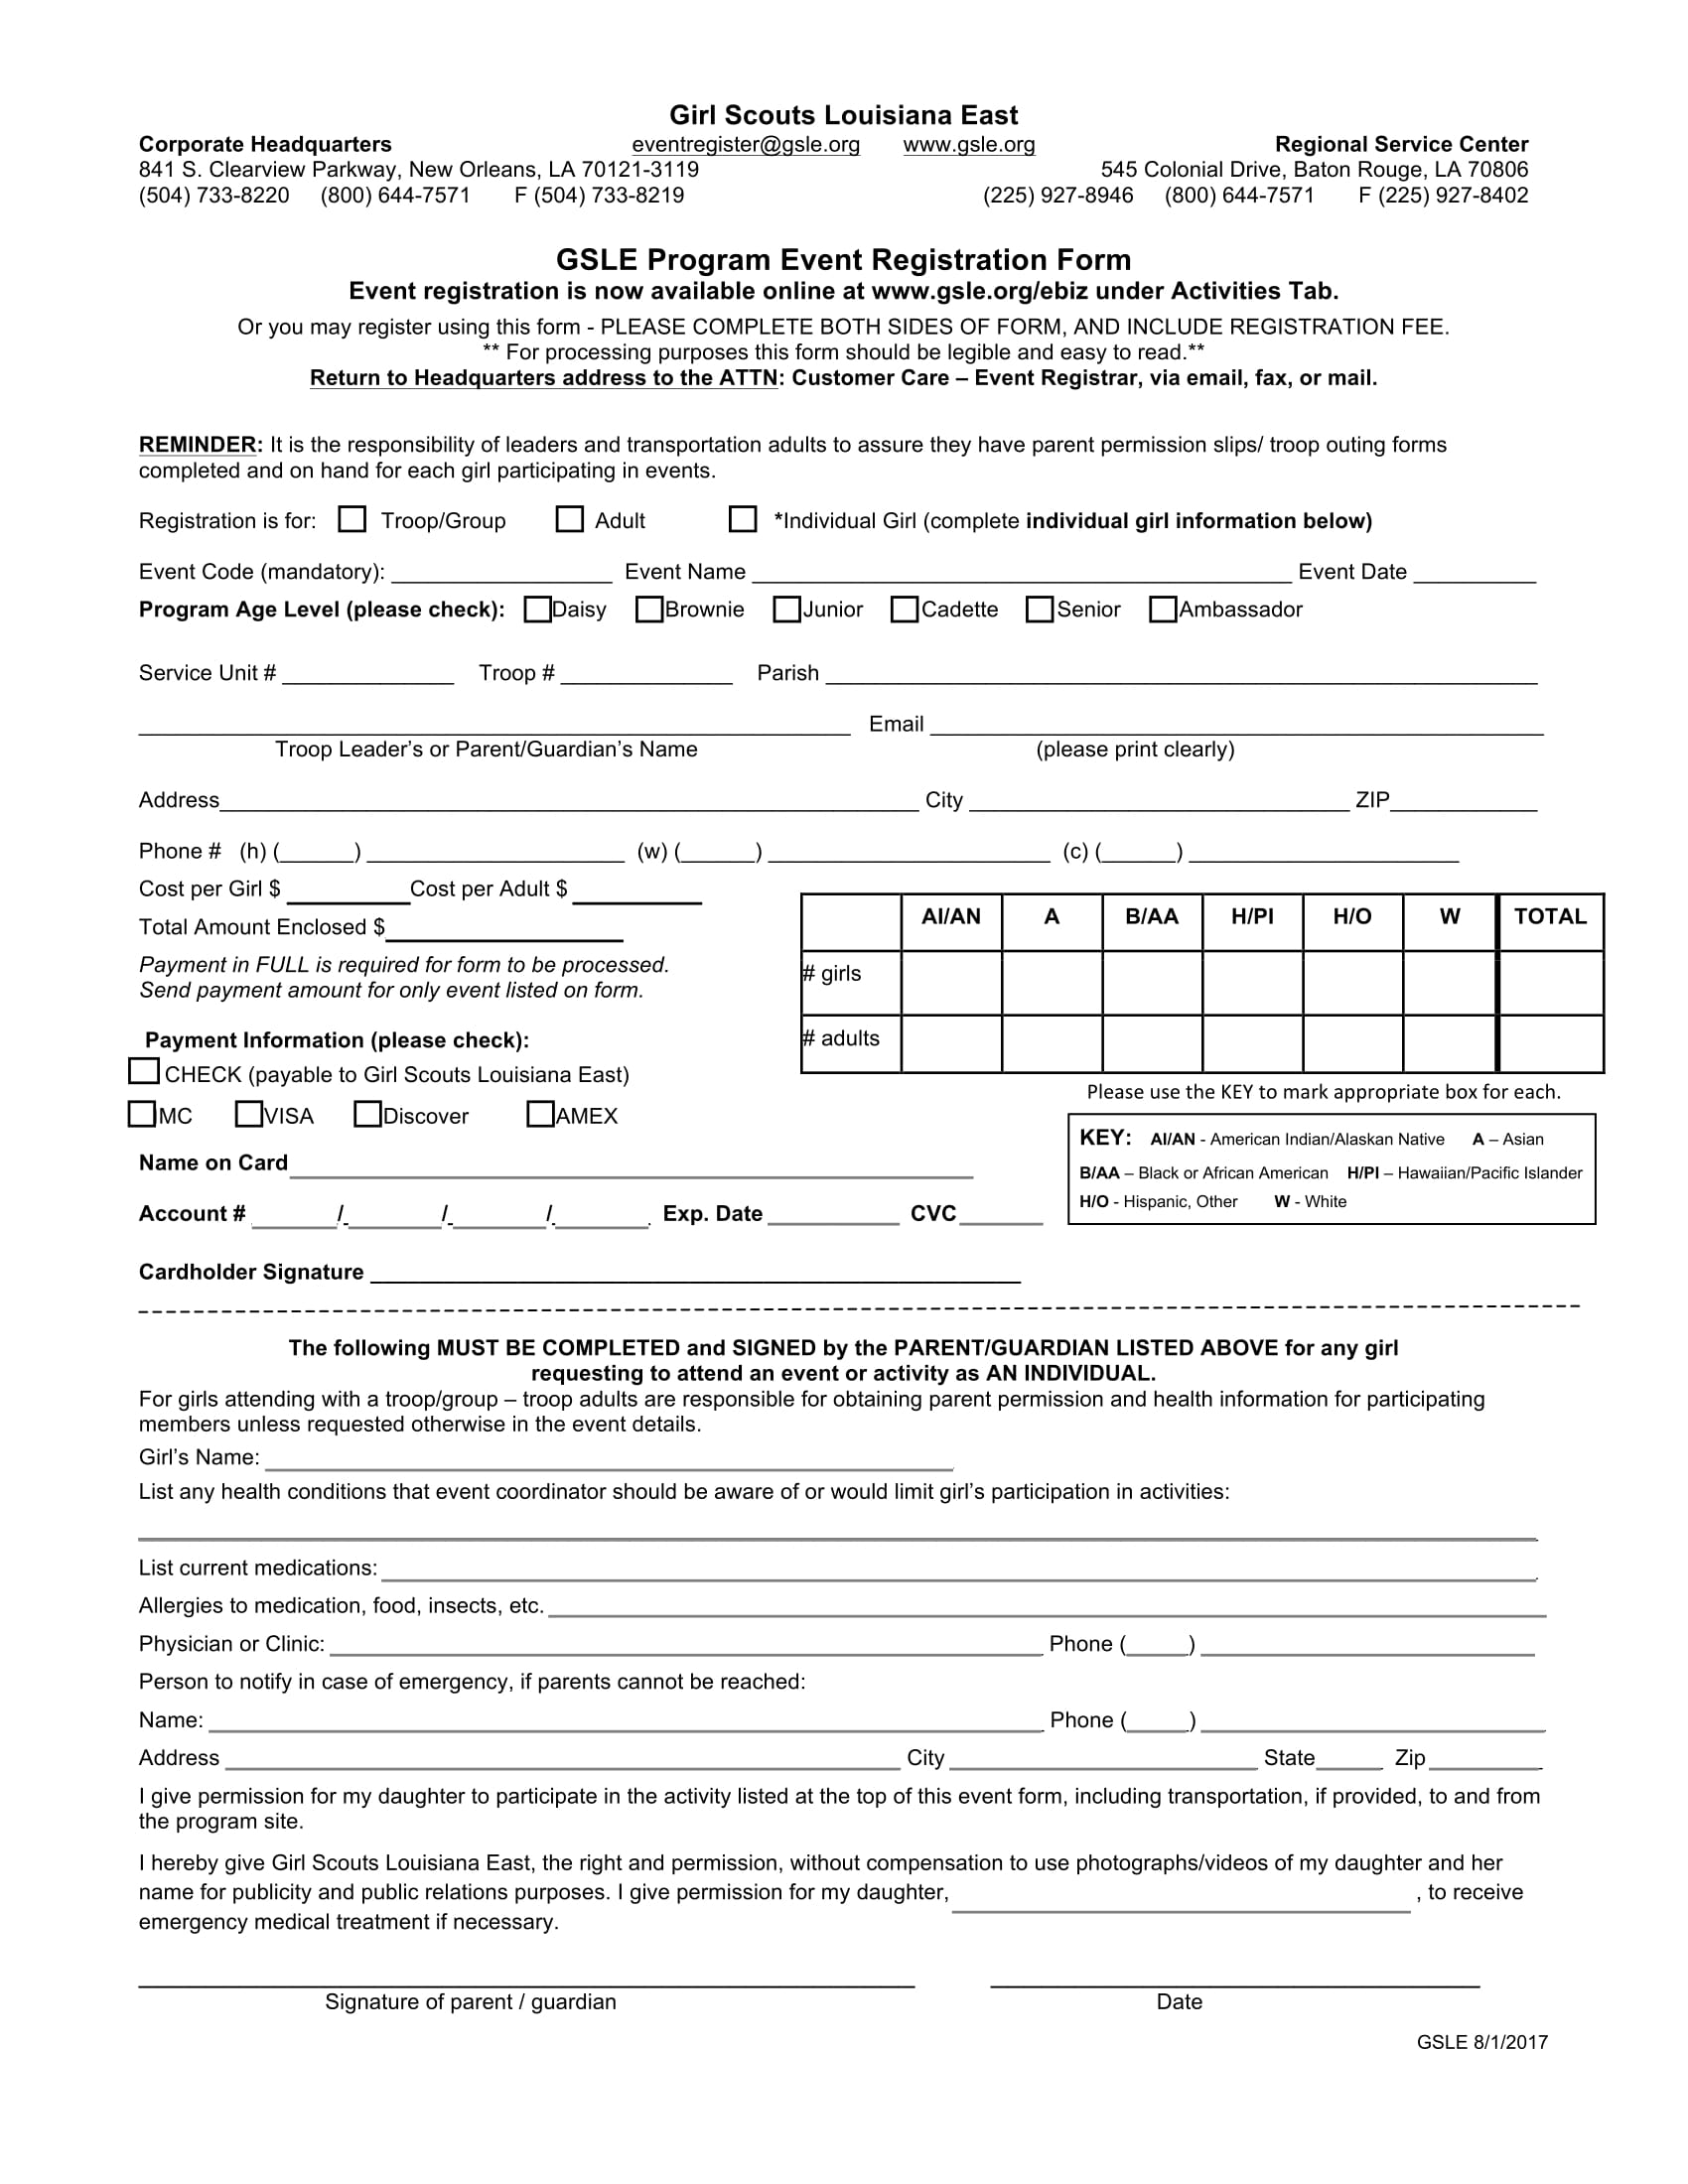 program event registration form 11